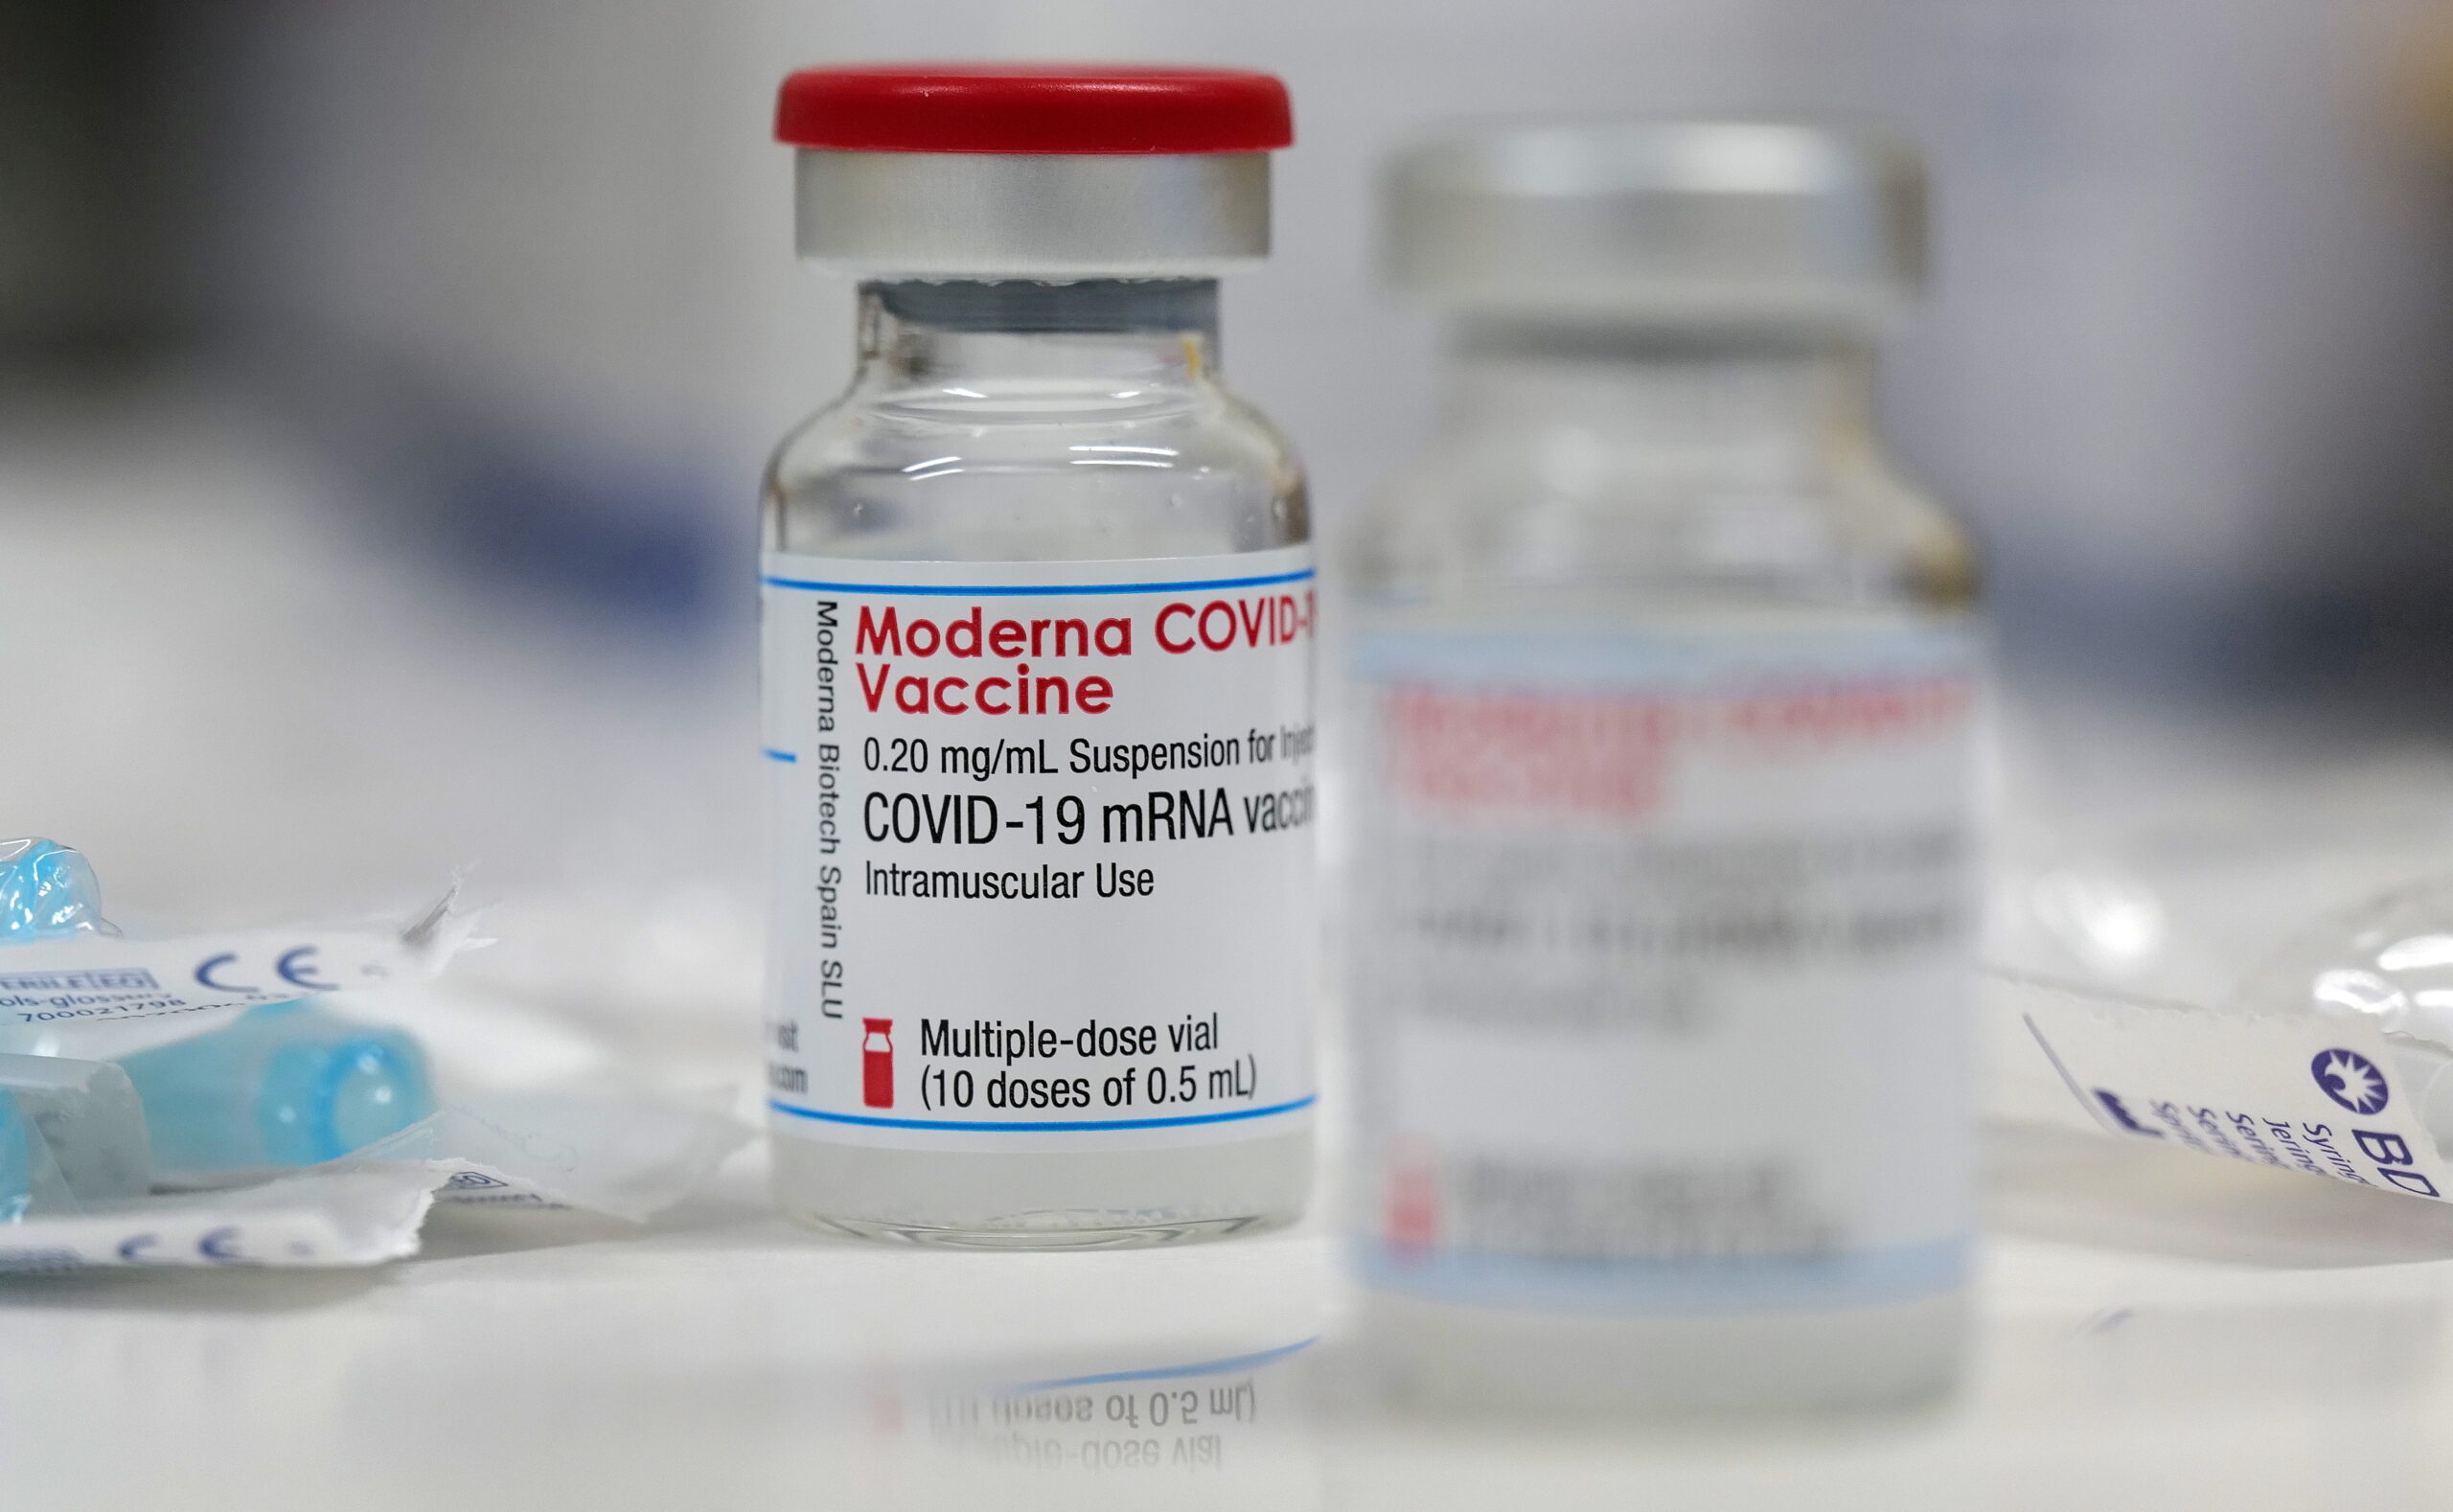 “โมเดอร์นา” ยืนยัน วัคซีนมีประสิทธิภาพ ป้องกันสายพันธุ์เดลต้า – ต่างประเทศ